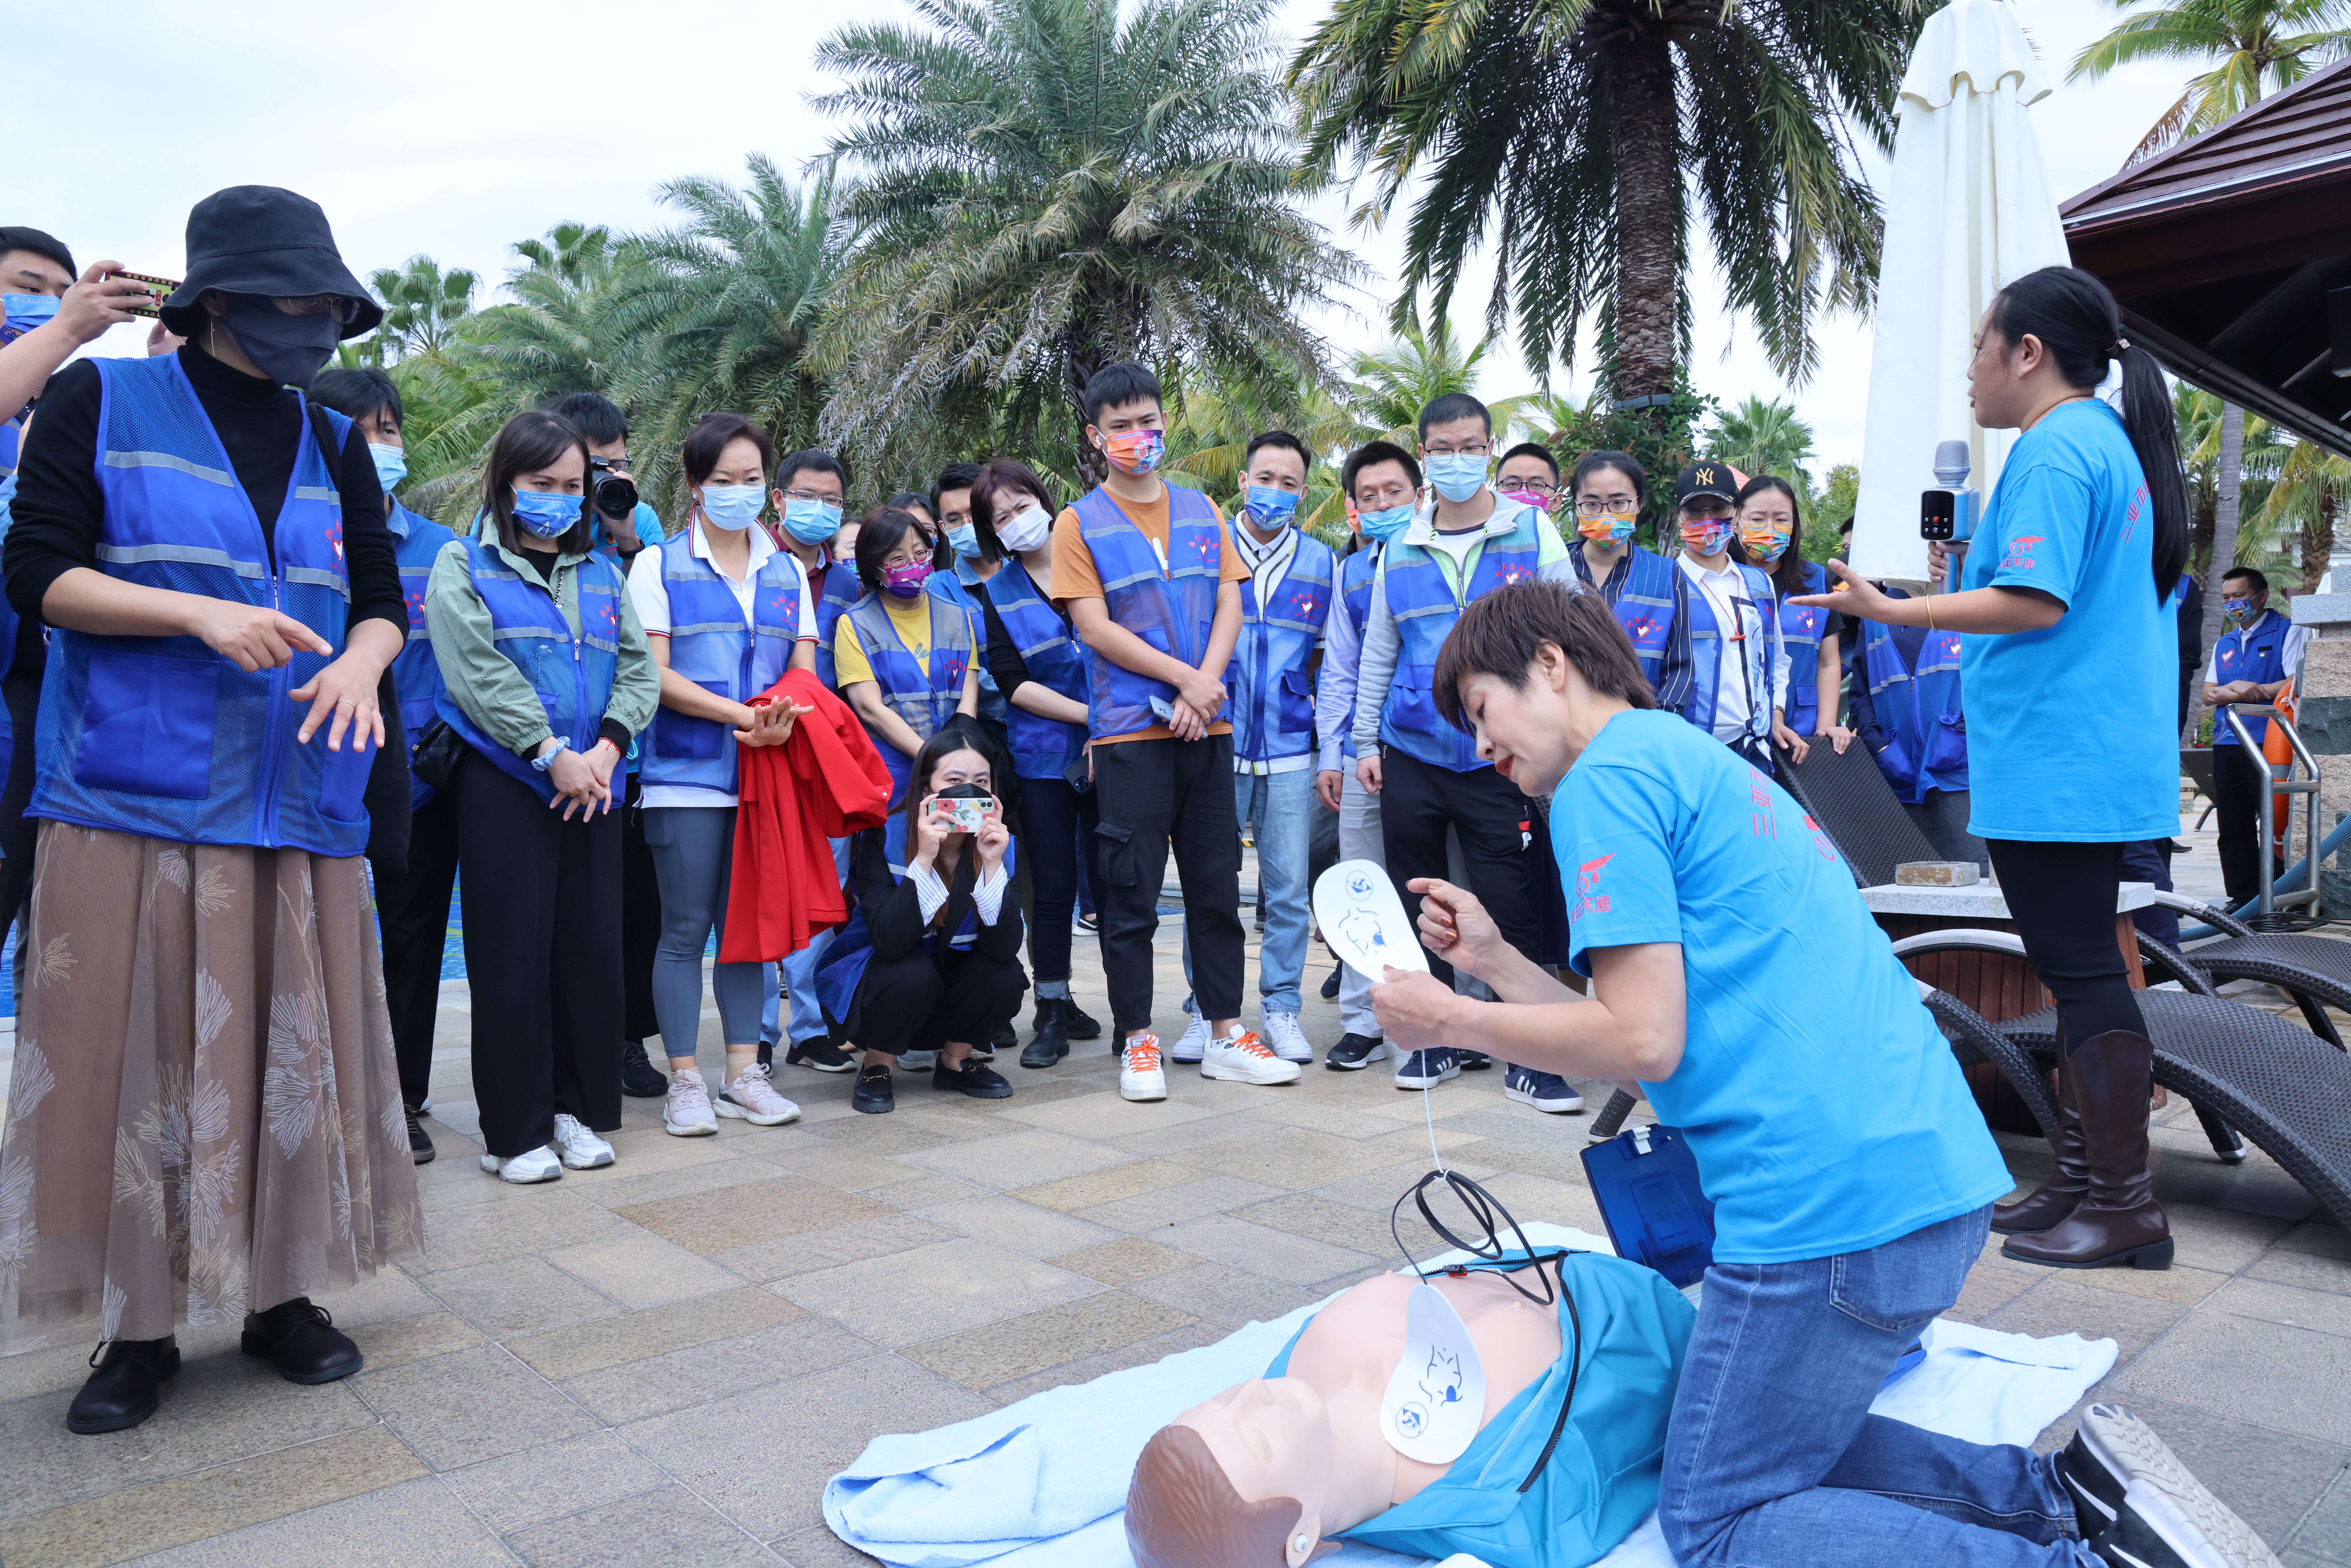 【一条大道 一个梦想】2021年中国青年训练营“志愿之旅”公益营第二天行程分享